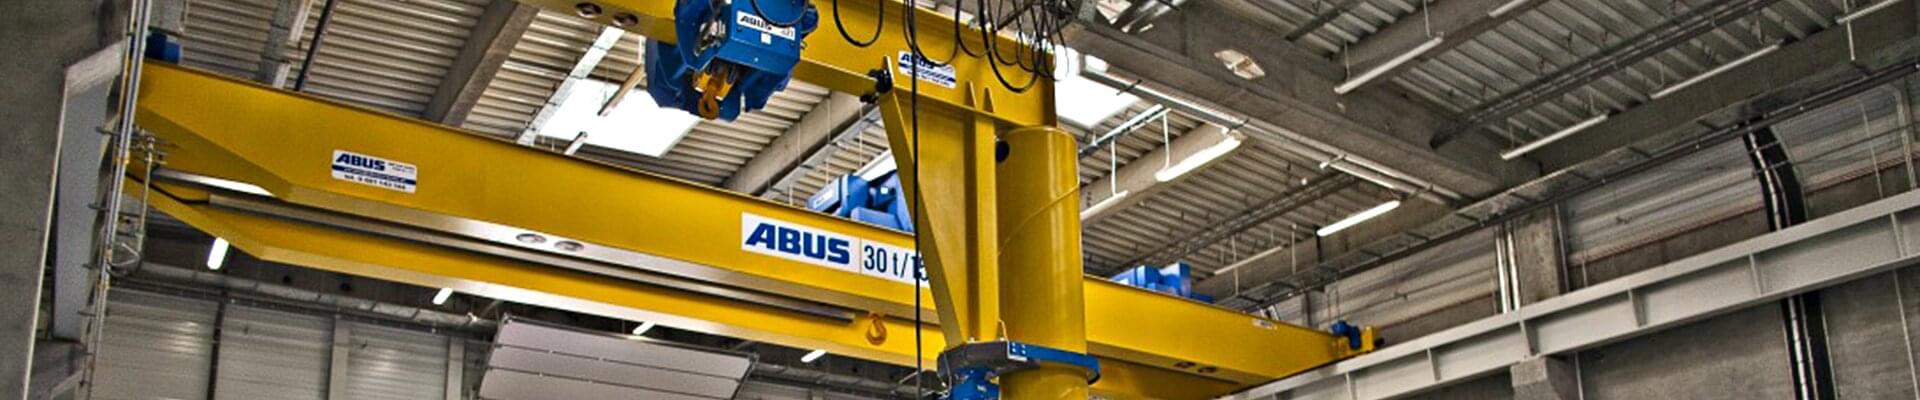 Żuraw obrotowy ABUS o udźwigu 3,2 t i długości wysięgnika 5 m w firmie Rolls Royce w Polsce